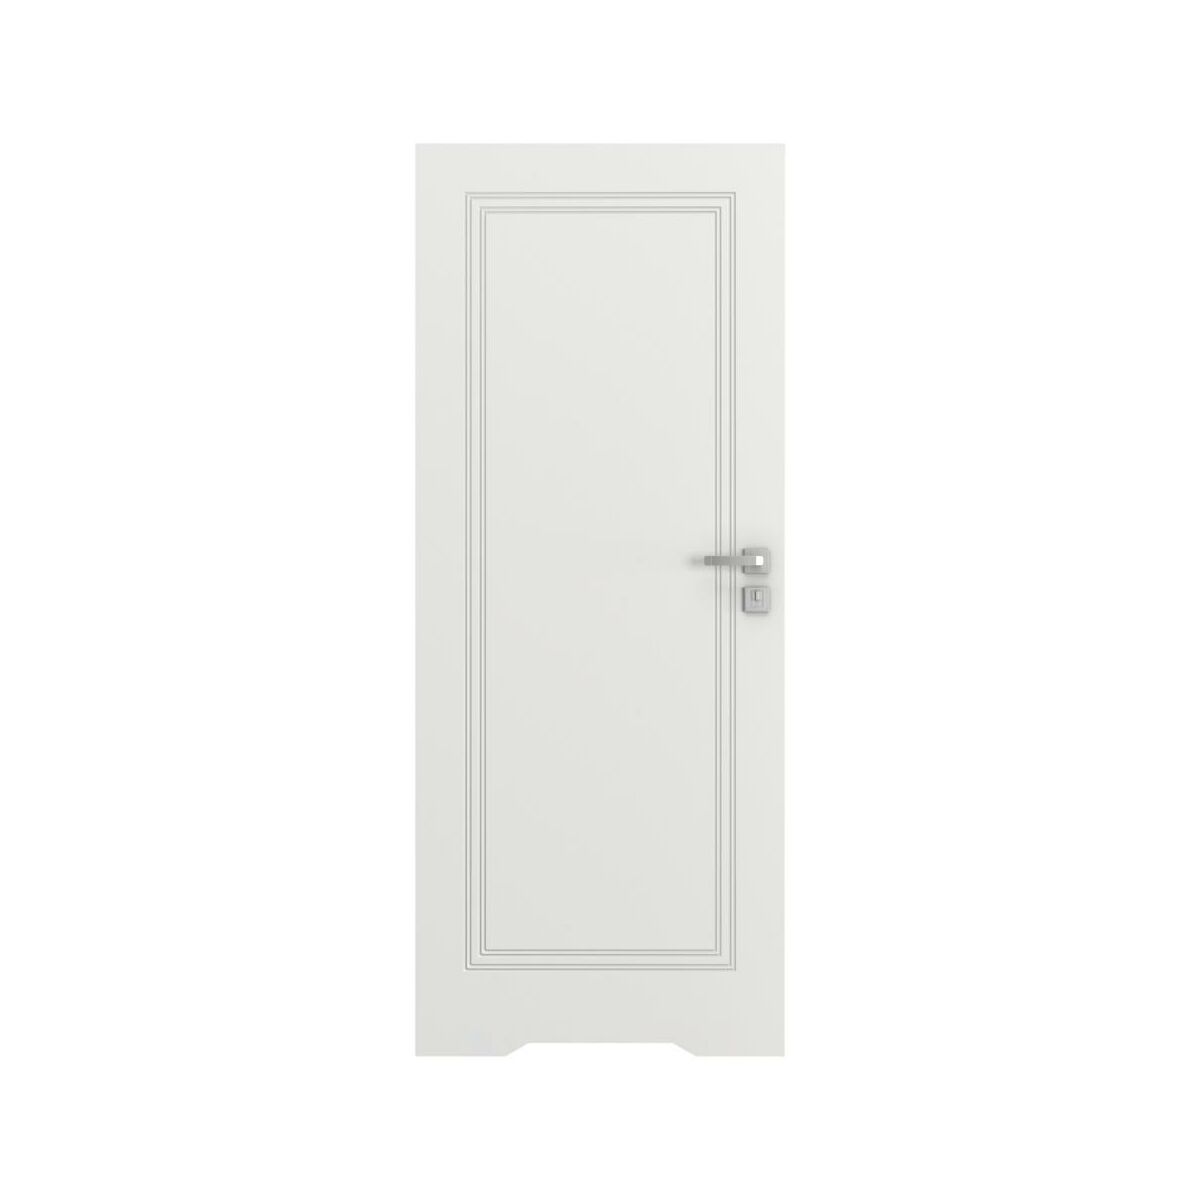 Drzwi wewnętrzne bezprzylgowe łazienkowe z podcięciem wentylacyjnym Vector U Białe 60 lewe Porta